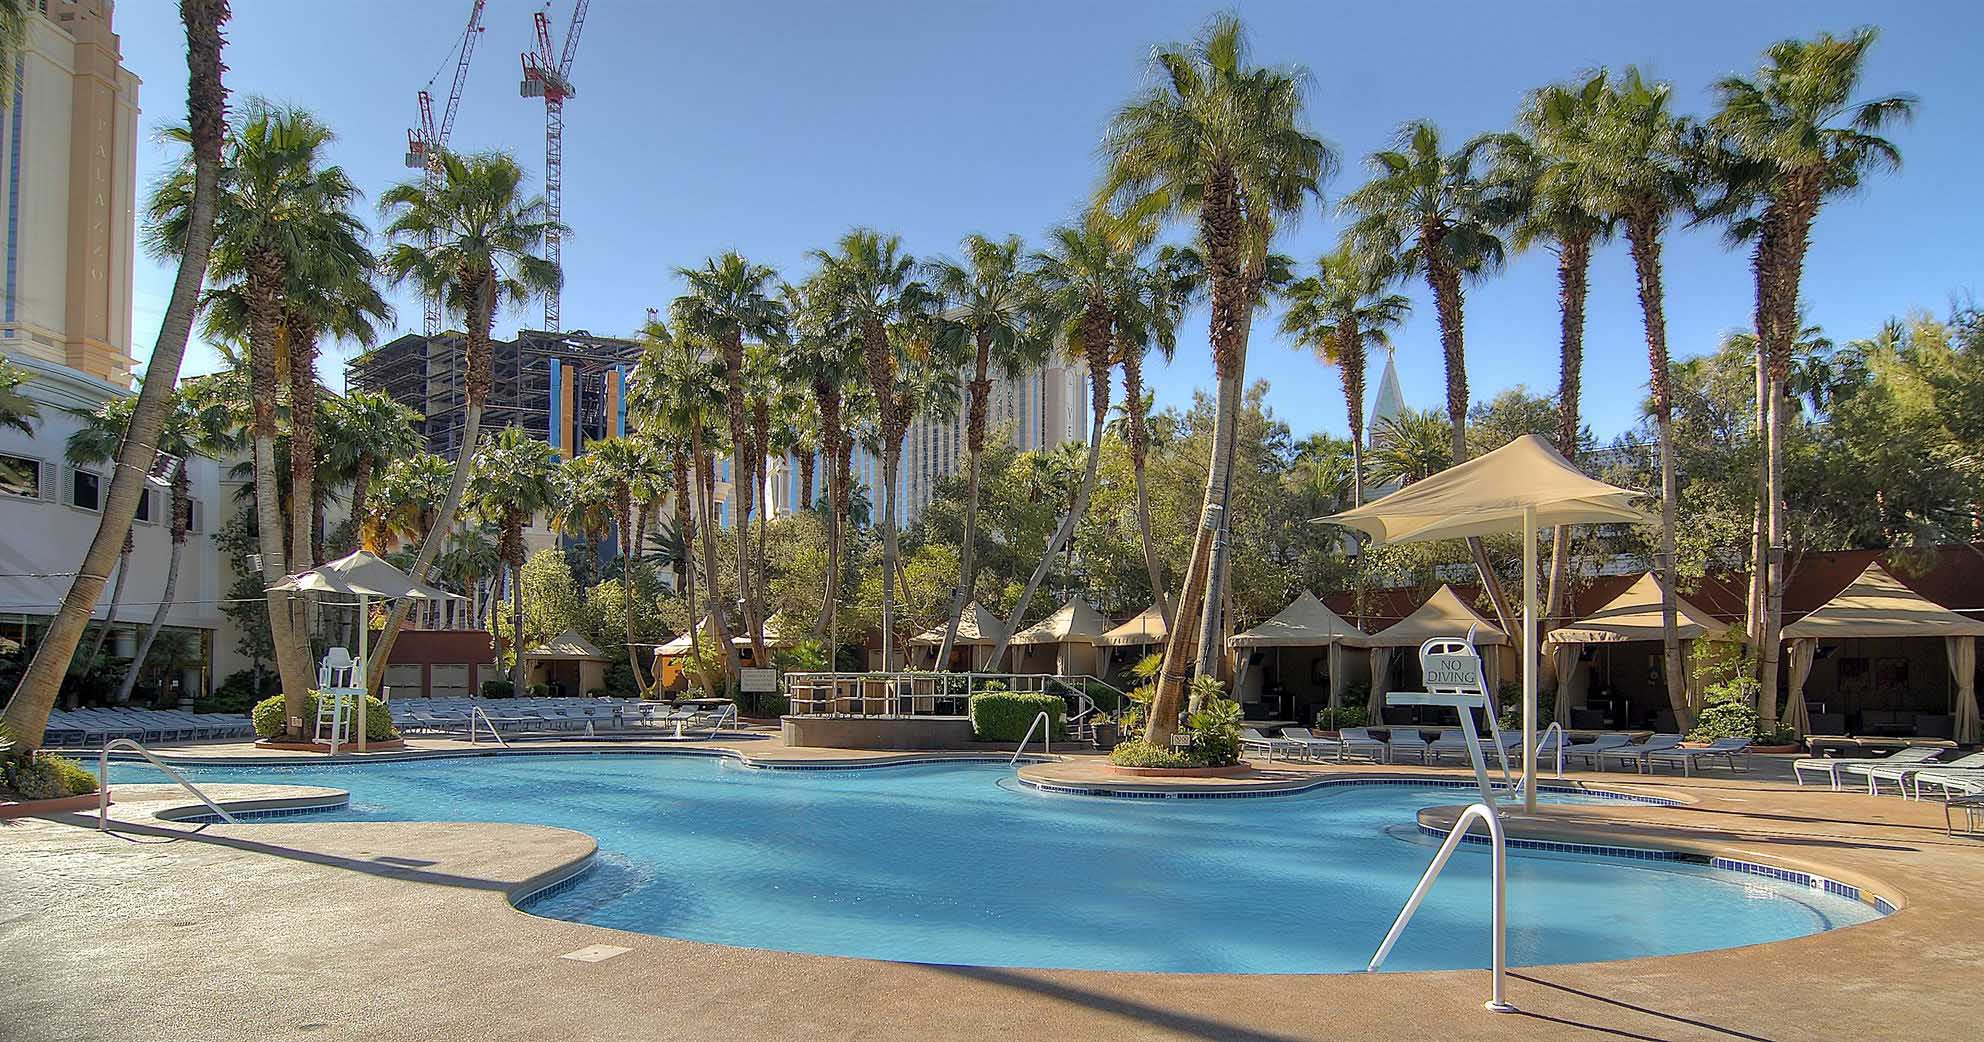 Treasure Island pool Las Vegas Hotels